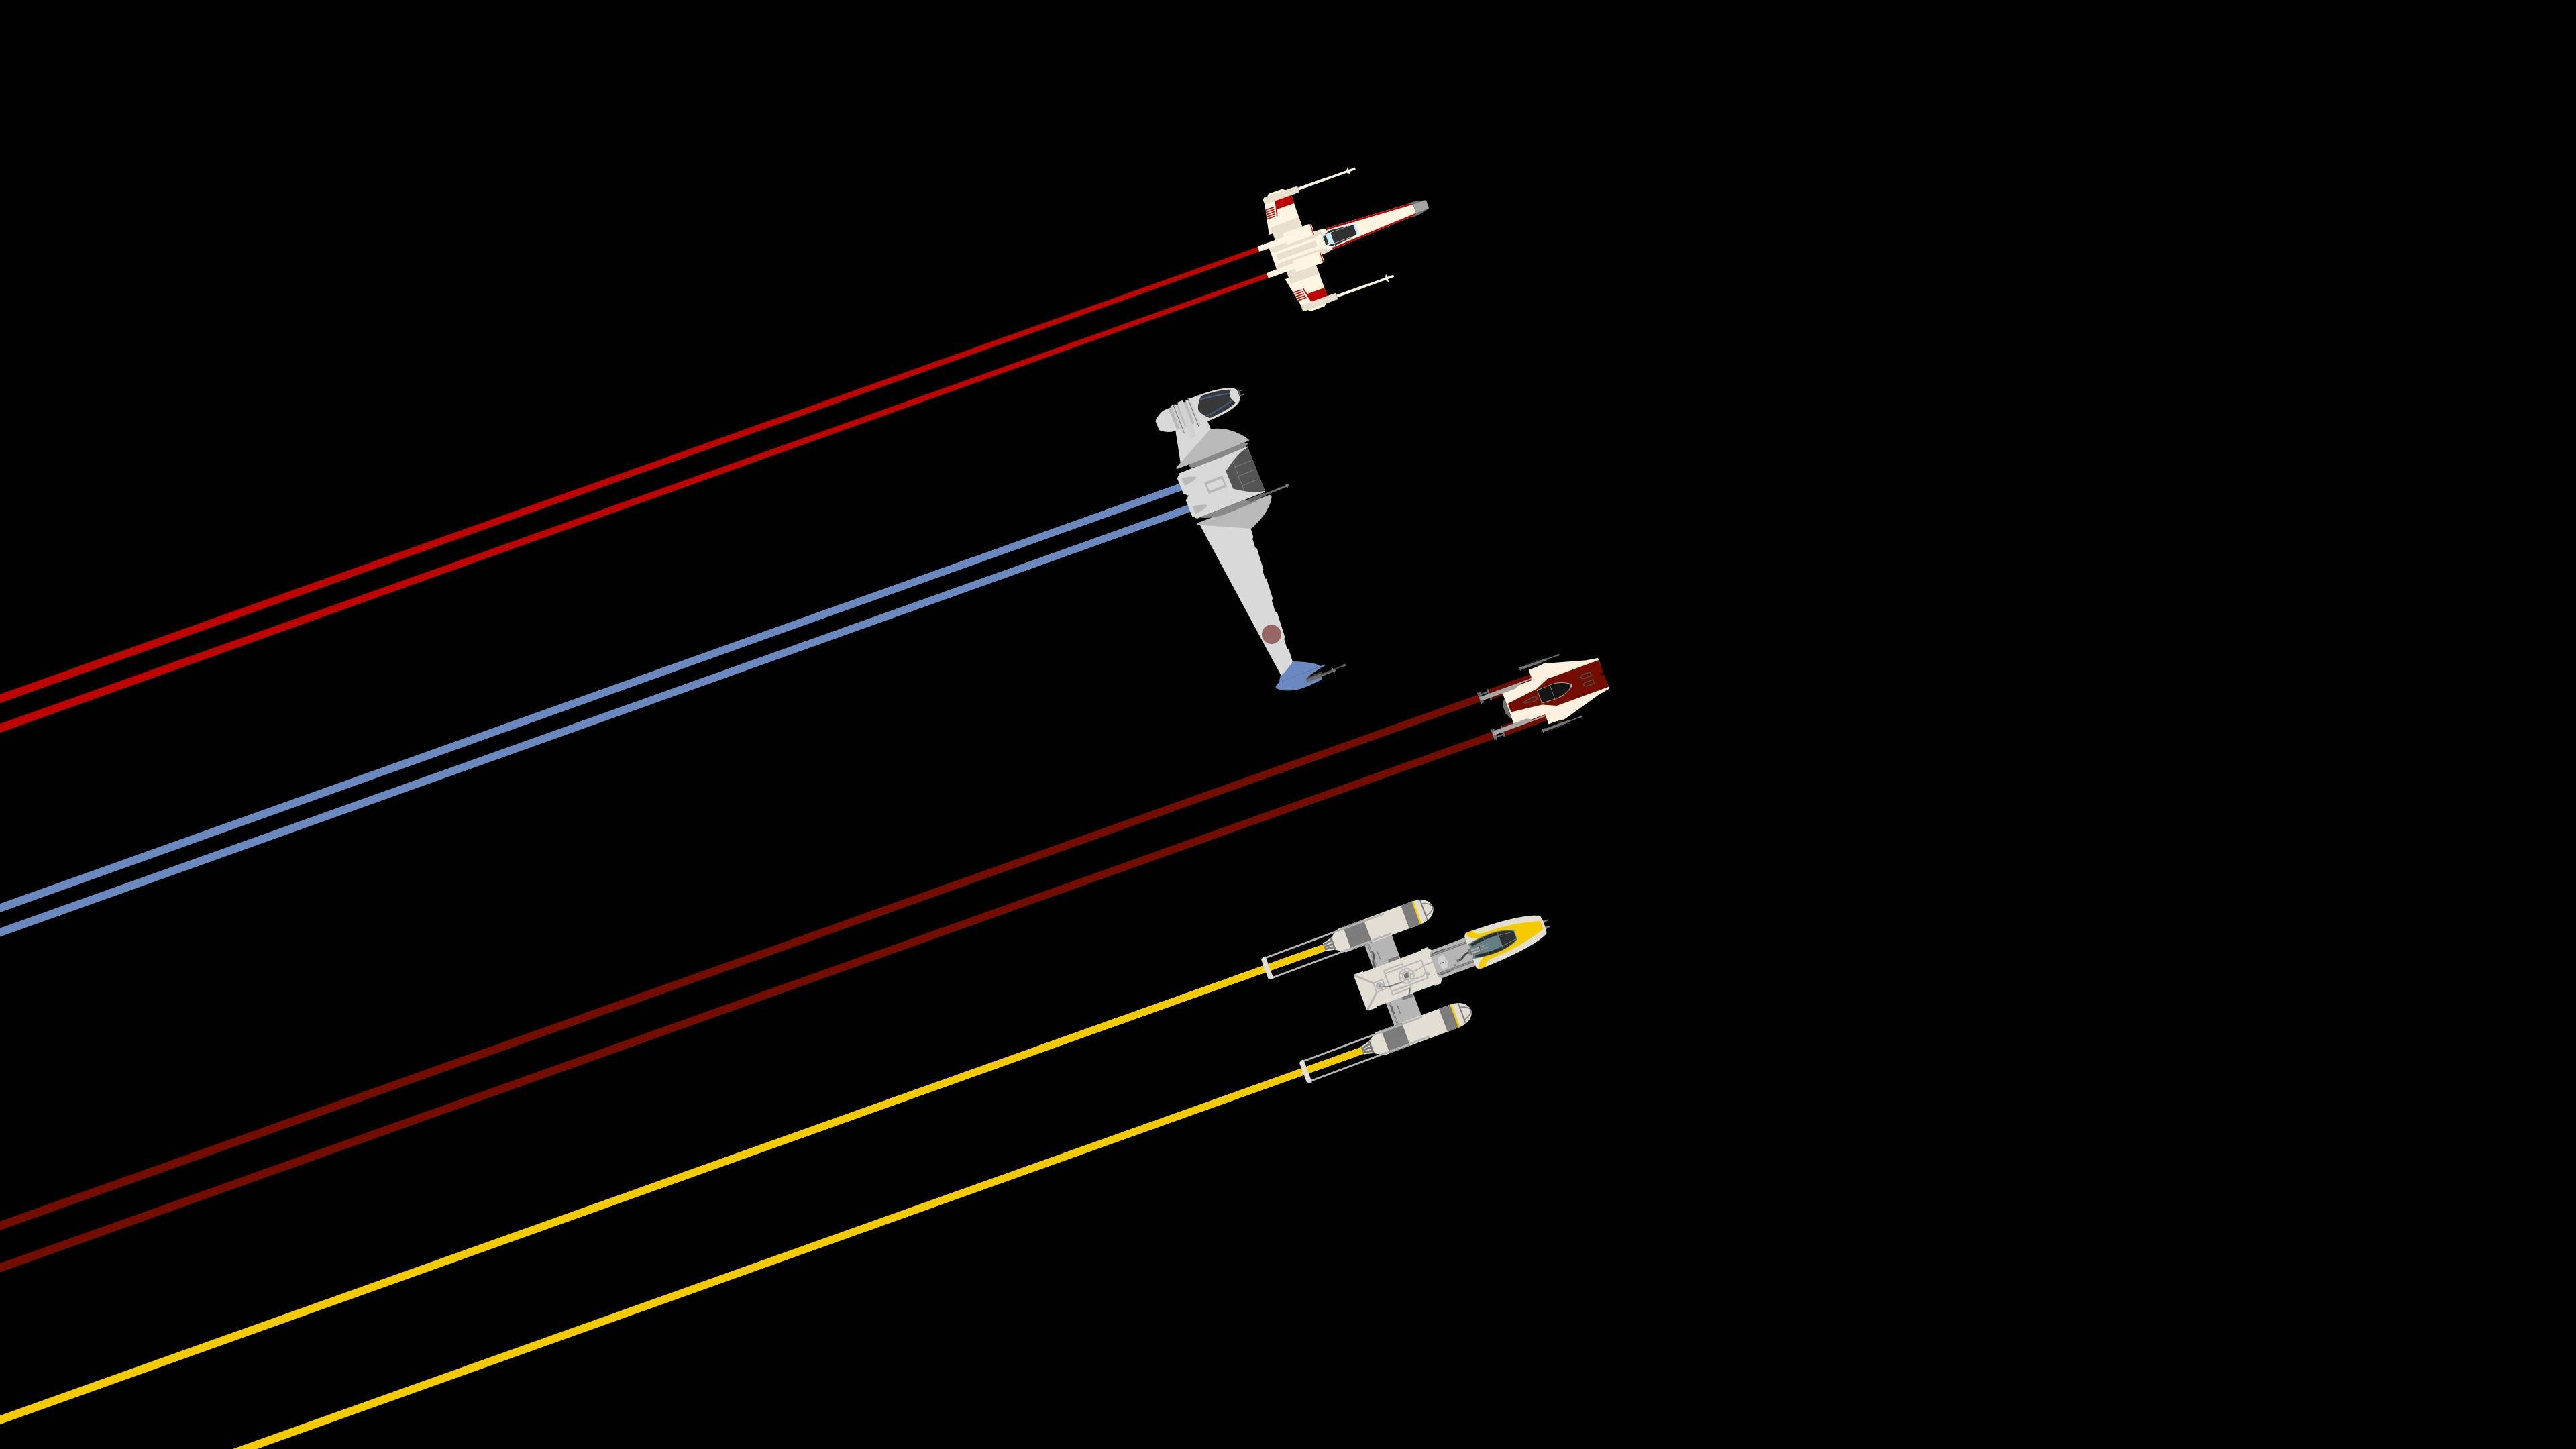 Cute Minimalist Star Wars Tie Fighter Aircraft Background